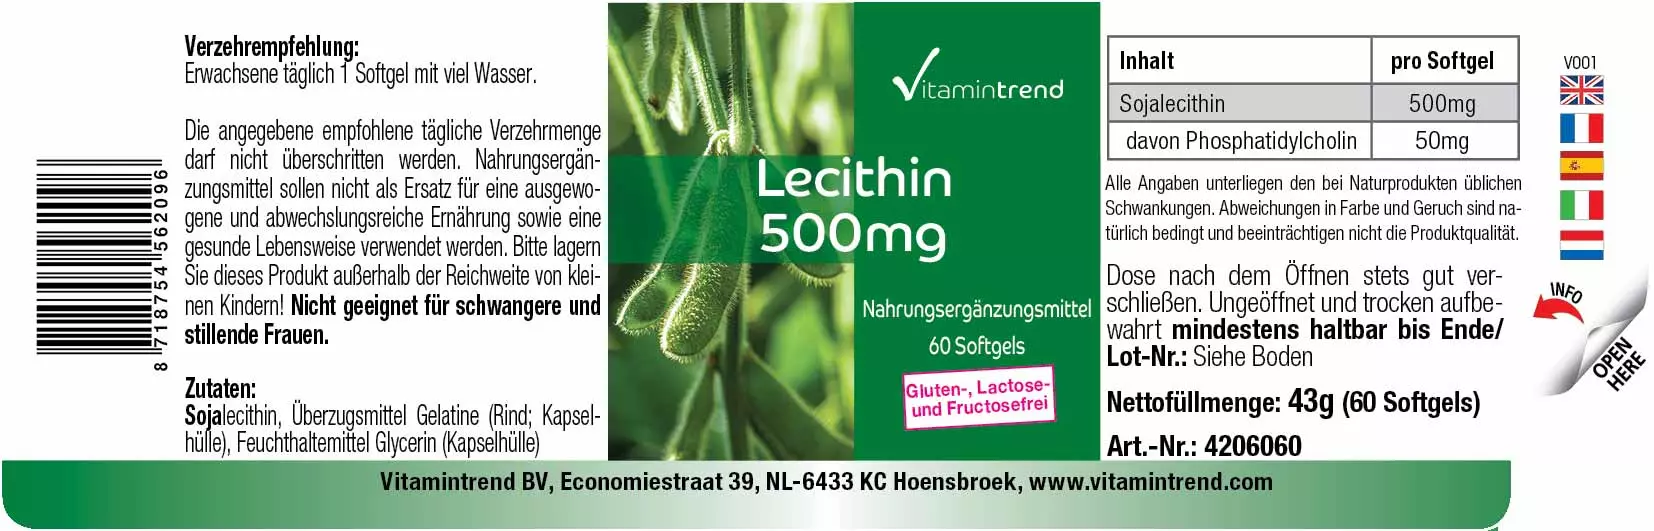 Lecithin 500mg - 60 Softgels - Phosphatidylcholin